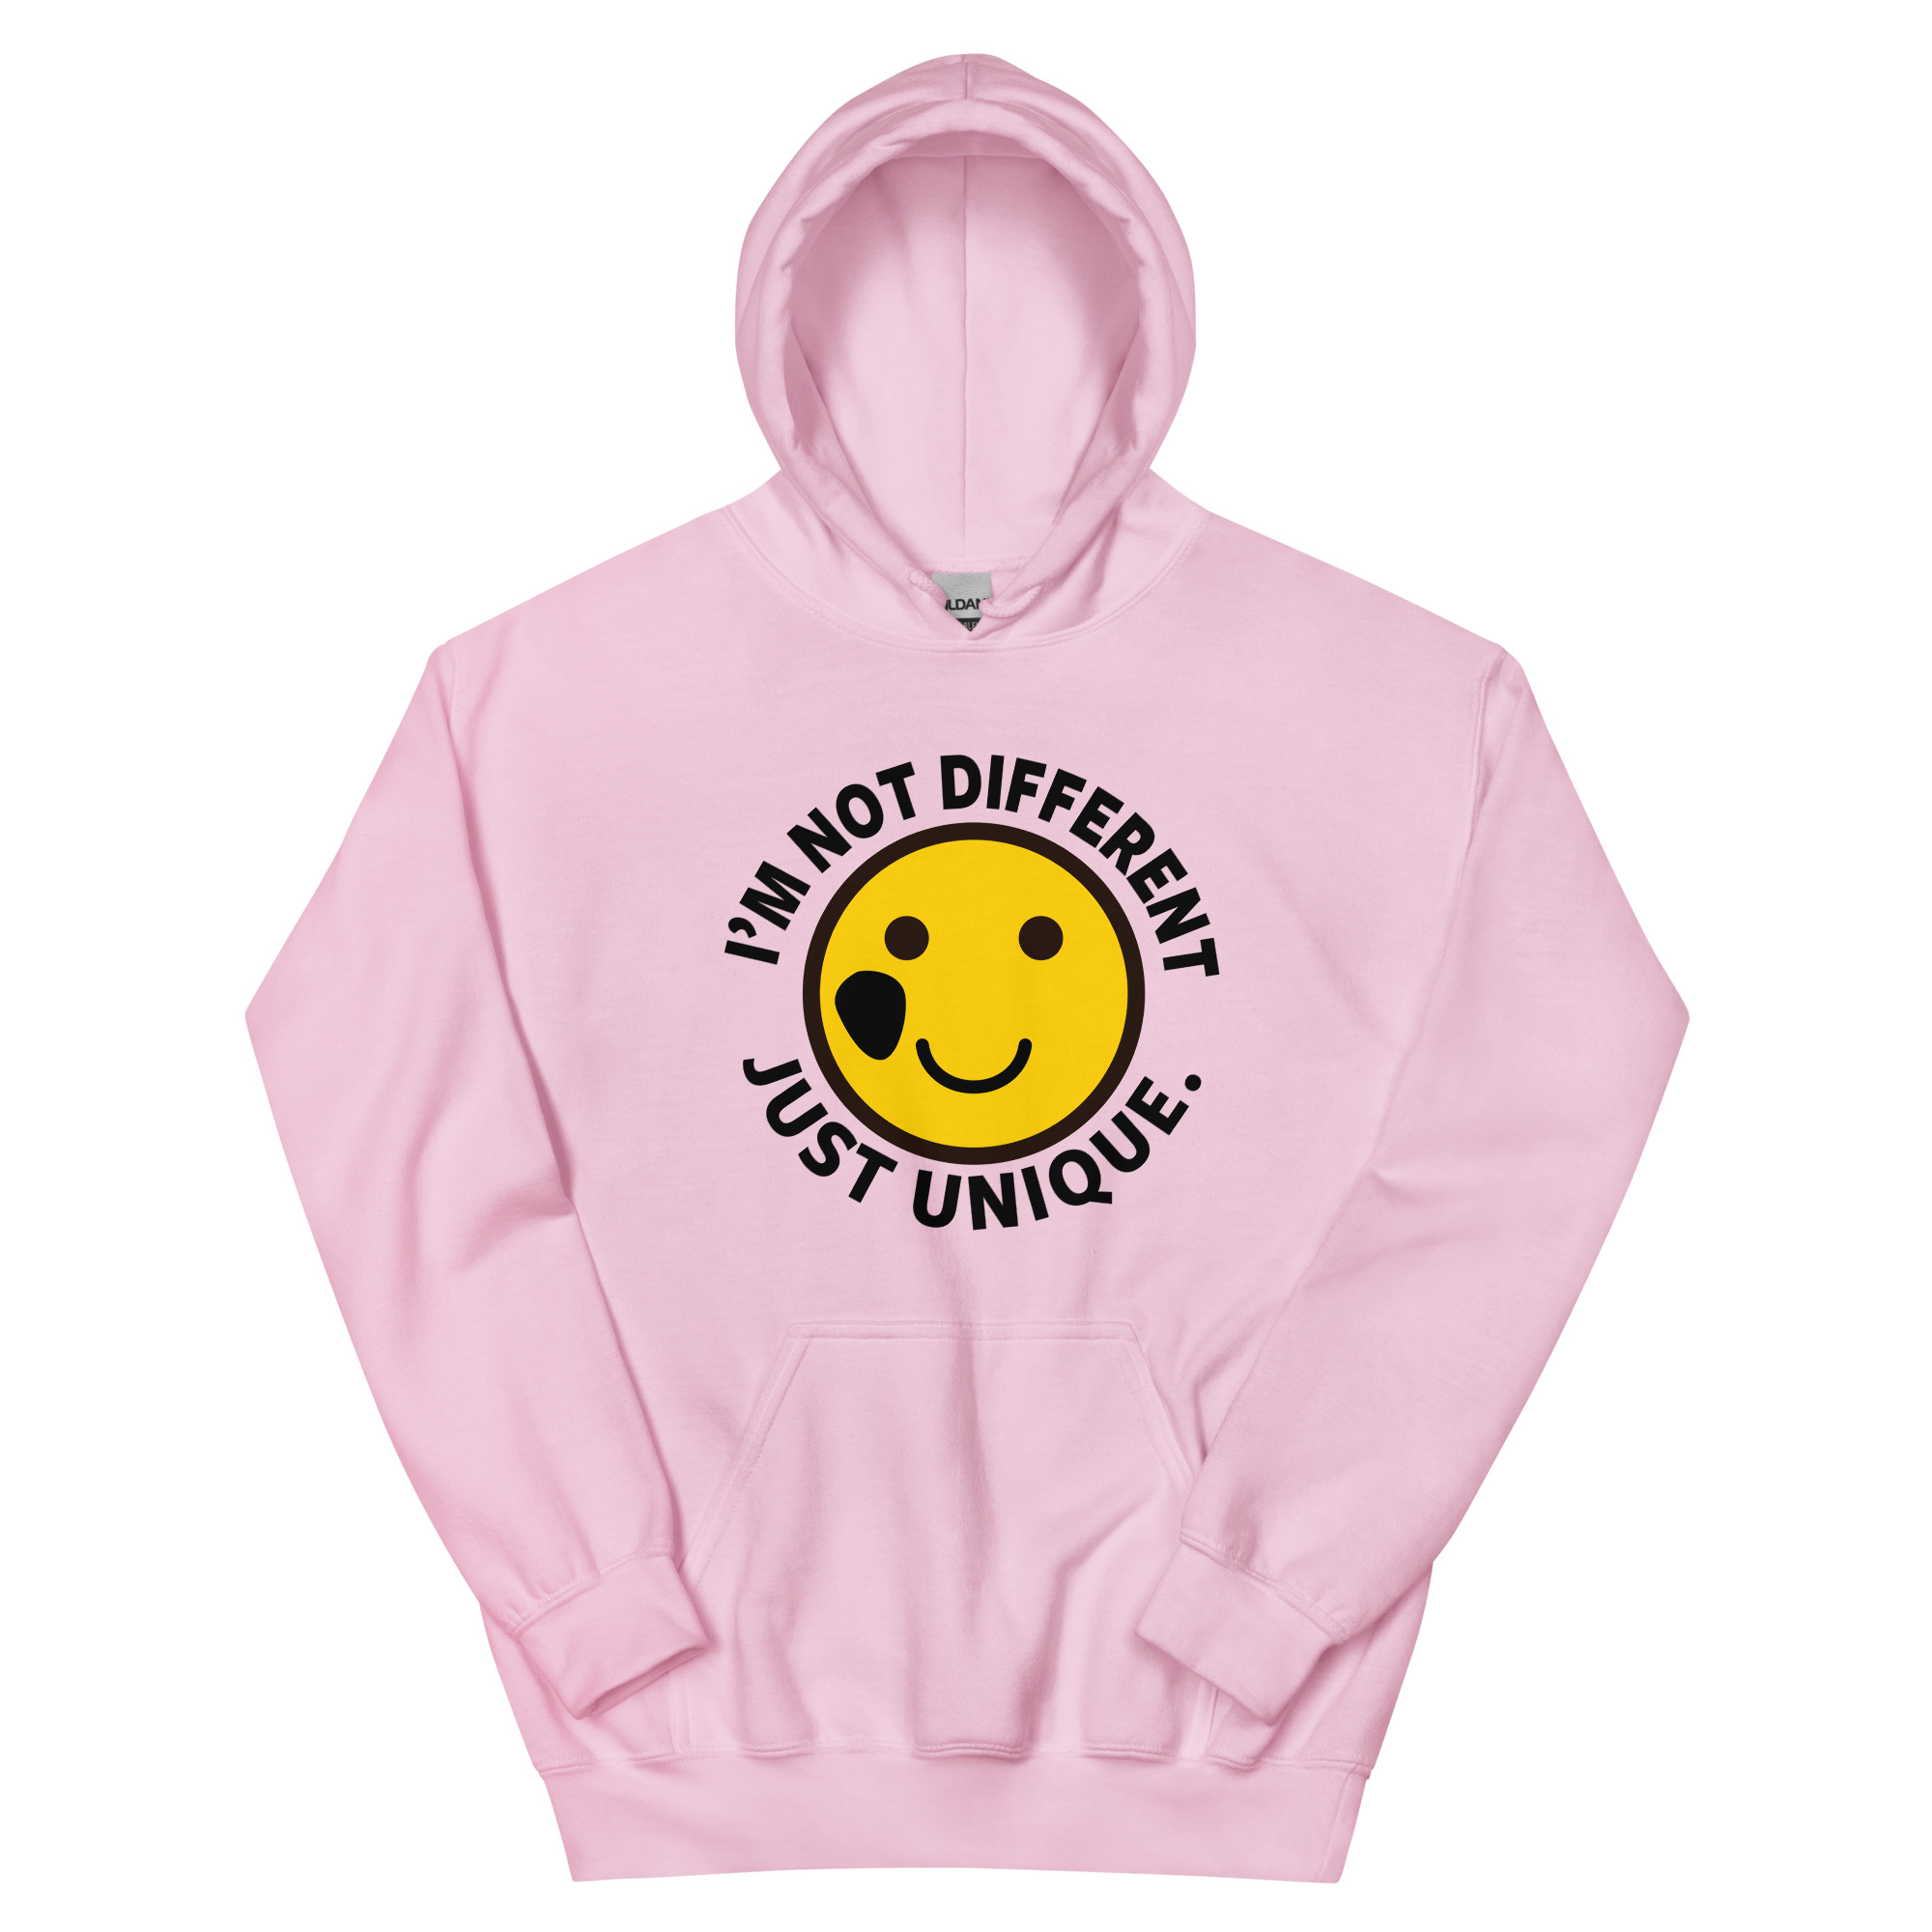 unisex-heavy-blend-hoodie-light-pink-front-65393e0602fe0.jpg